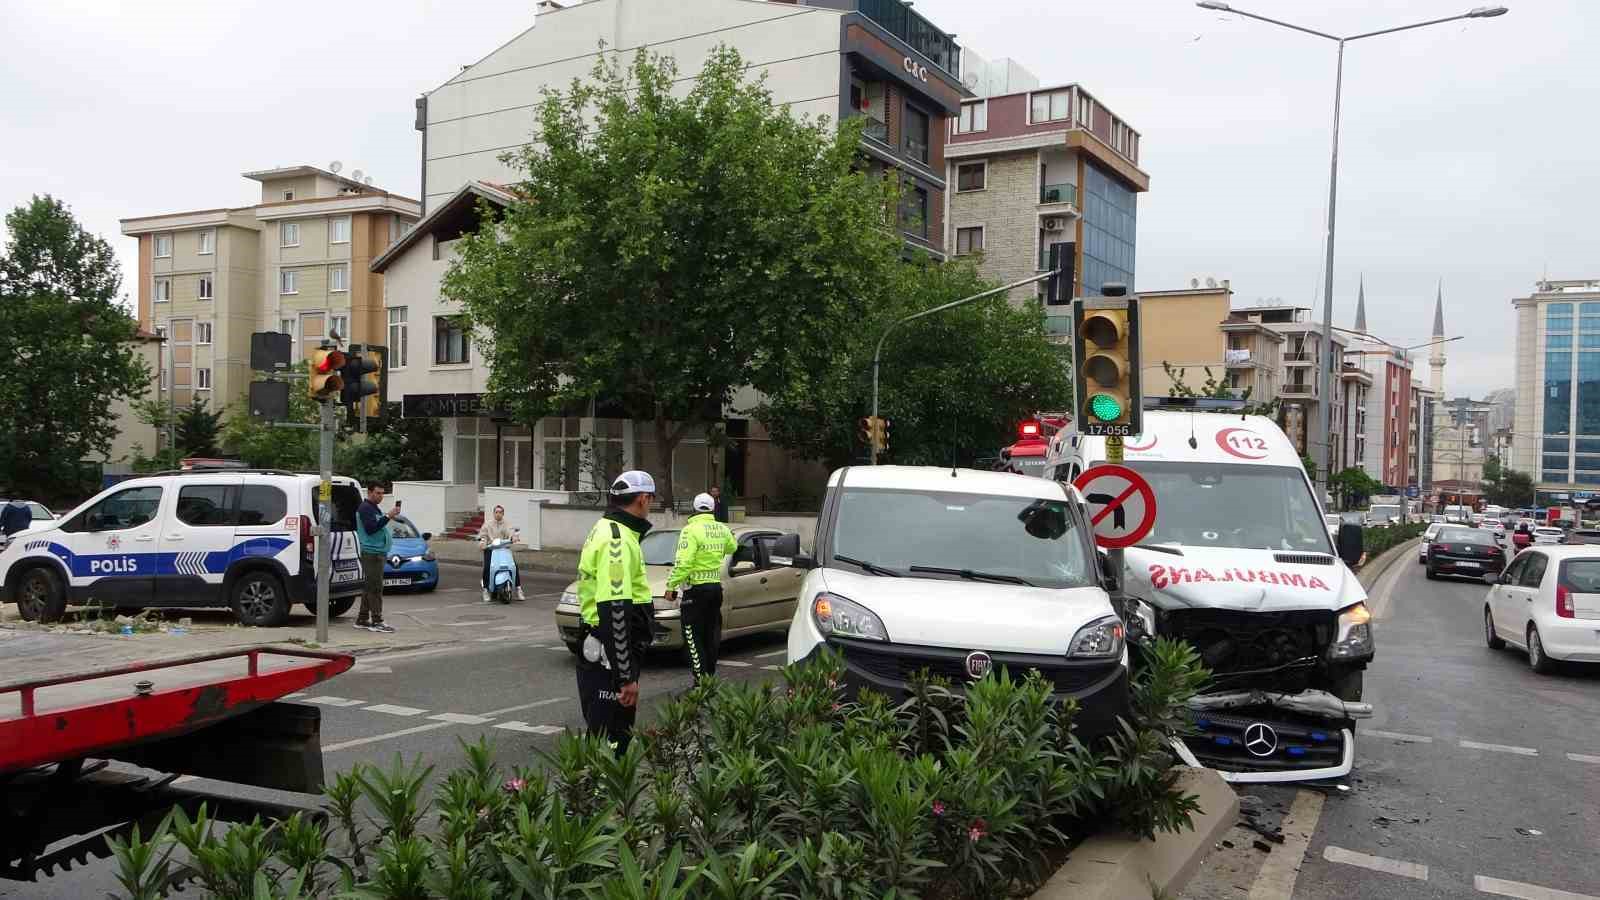 Kartal’da ambulans ile hafif ticari araç çarpıştı: 4 yaralı
